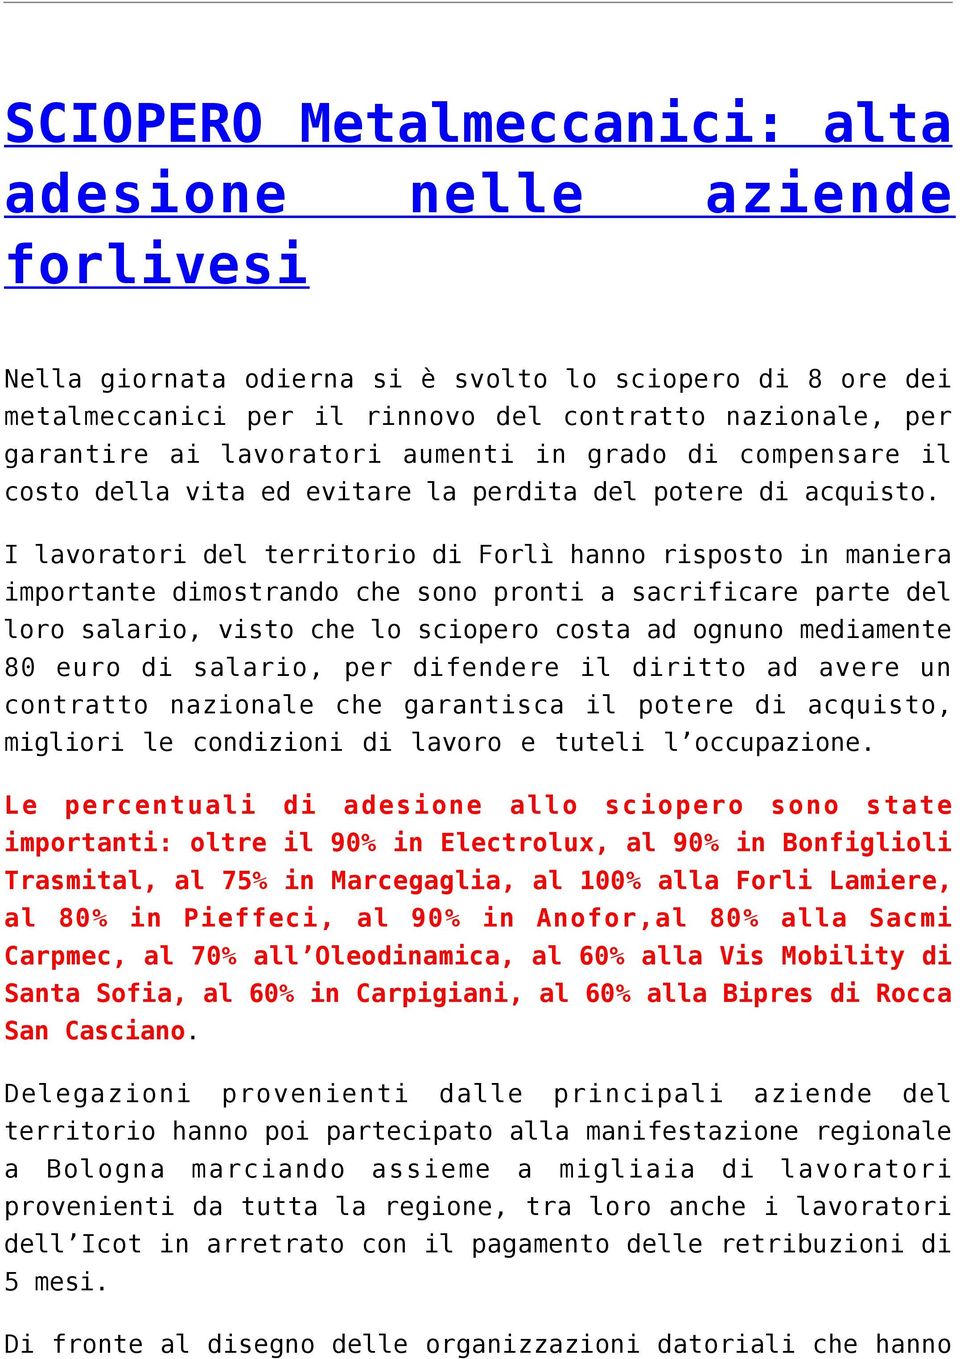 I lavoratori del territorio di Forlì hanno risposto in maniera importante dimostrando che sono pronti a sacrificare parte del loro salario, visto che lo sciopero costa ad ognuno mediamente 80 euro di